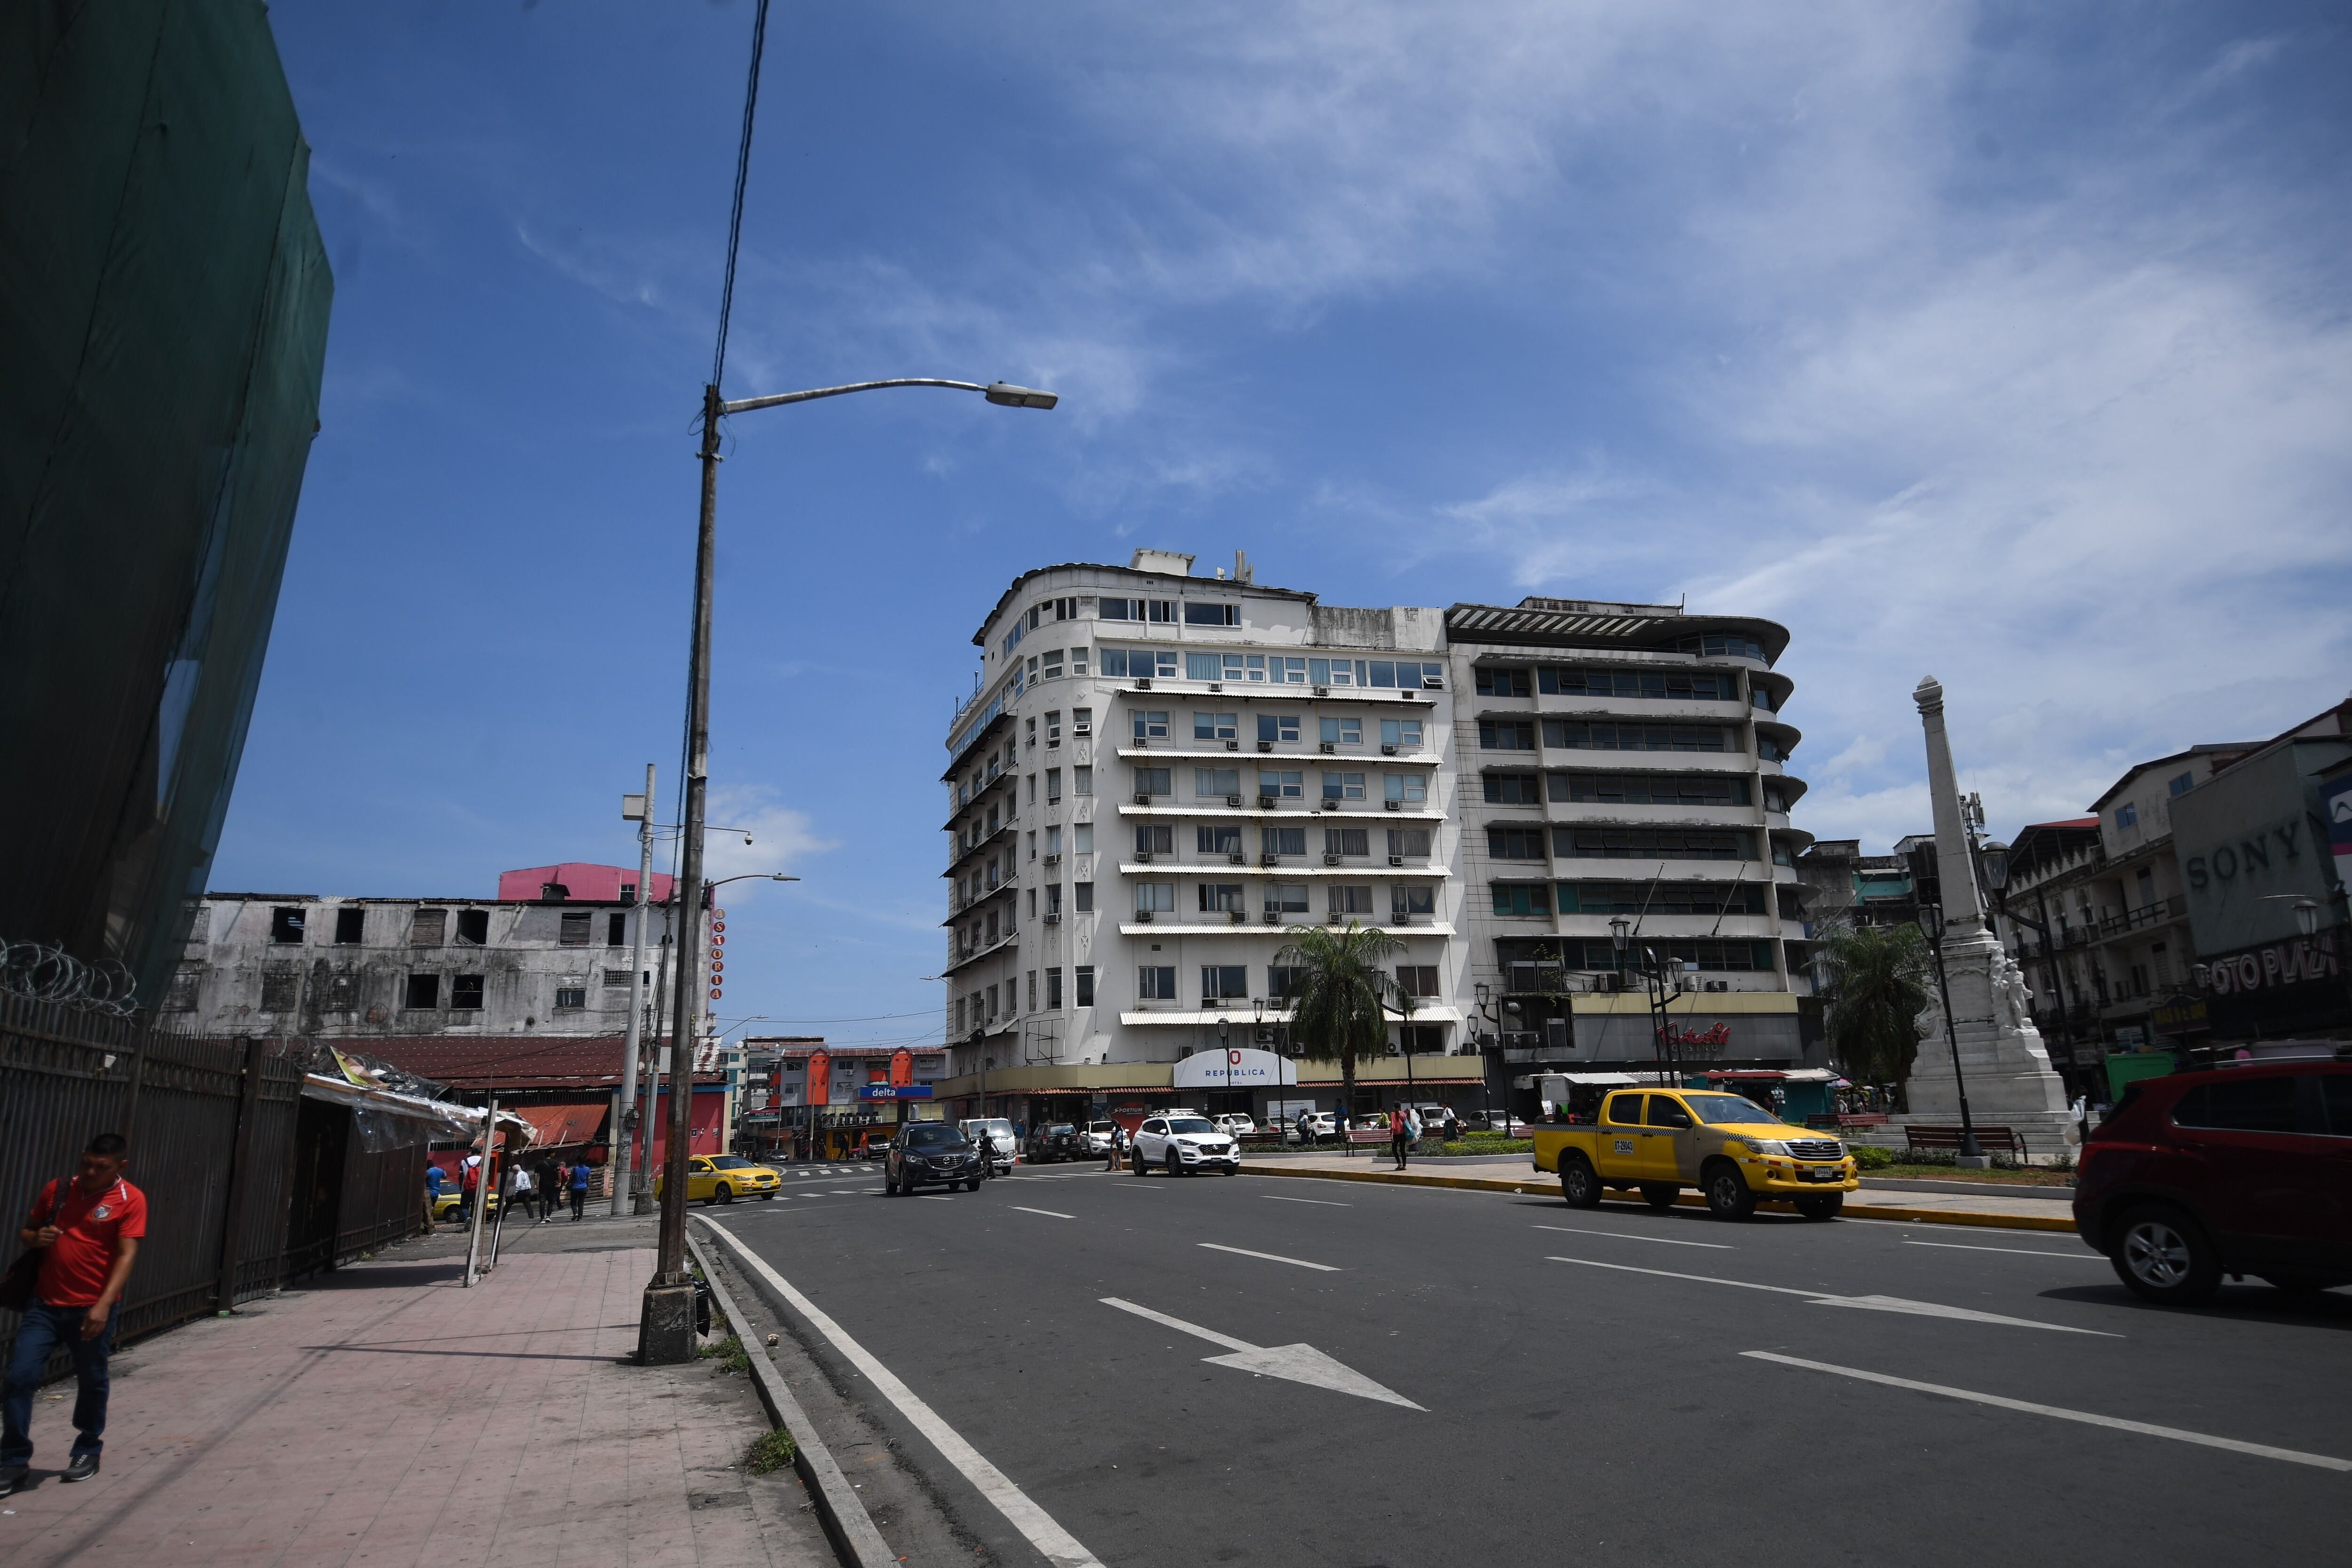 El edificio de la izquierda funcionó como sede del Hotel Internacional, en el de la derecha, funcionó Internacional de Seguros. La Prensa/Agustín Herrera